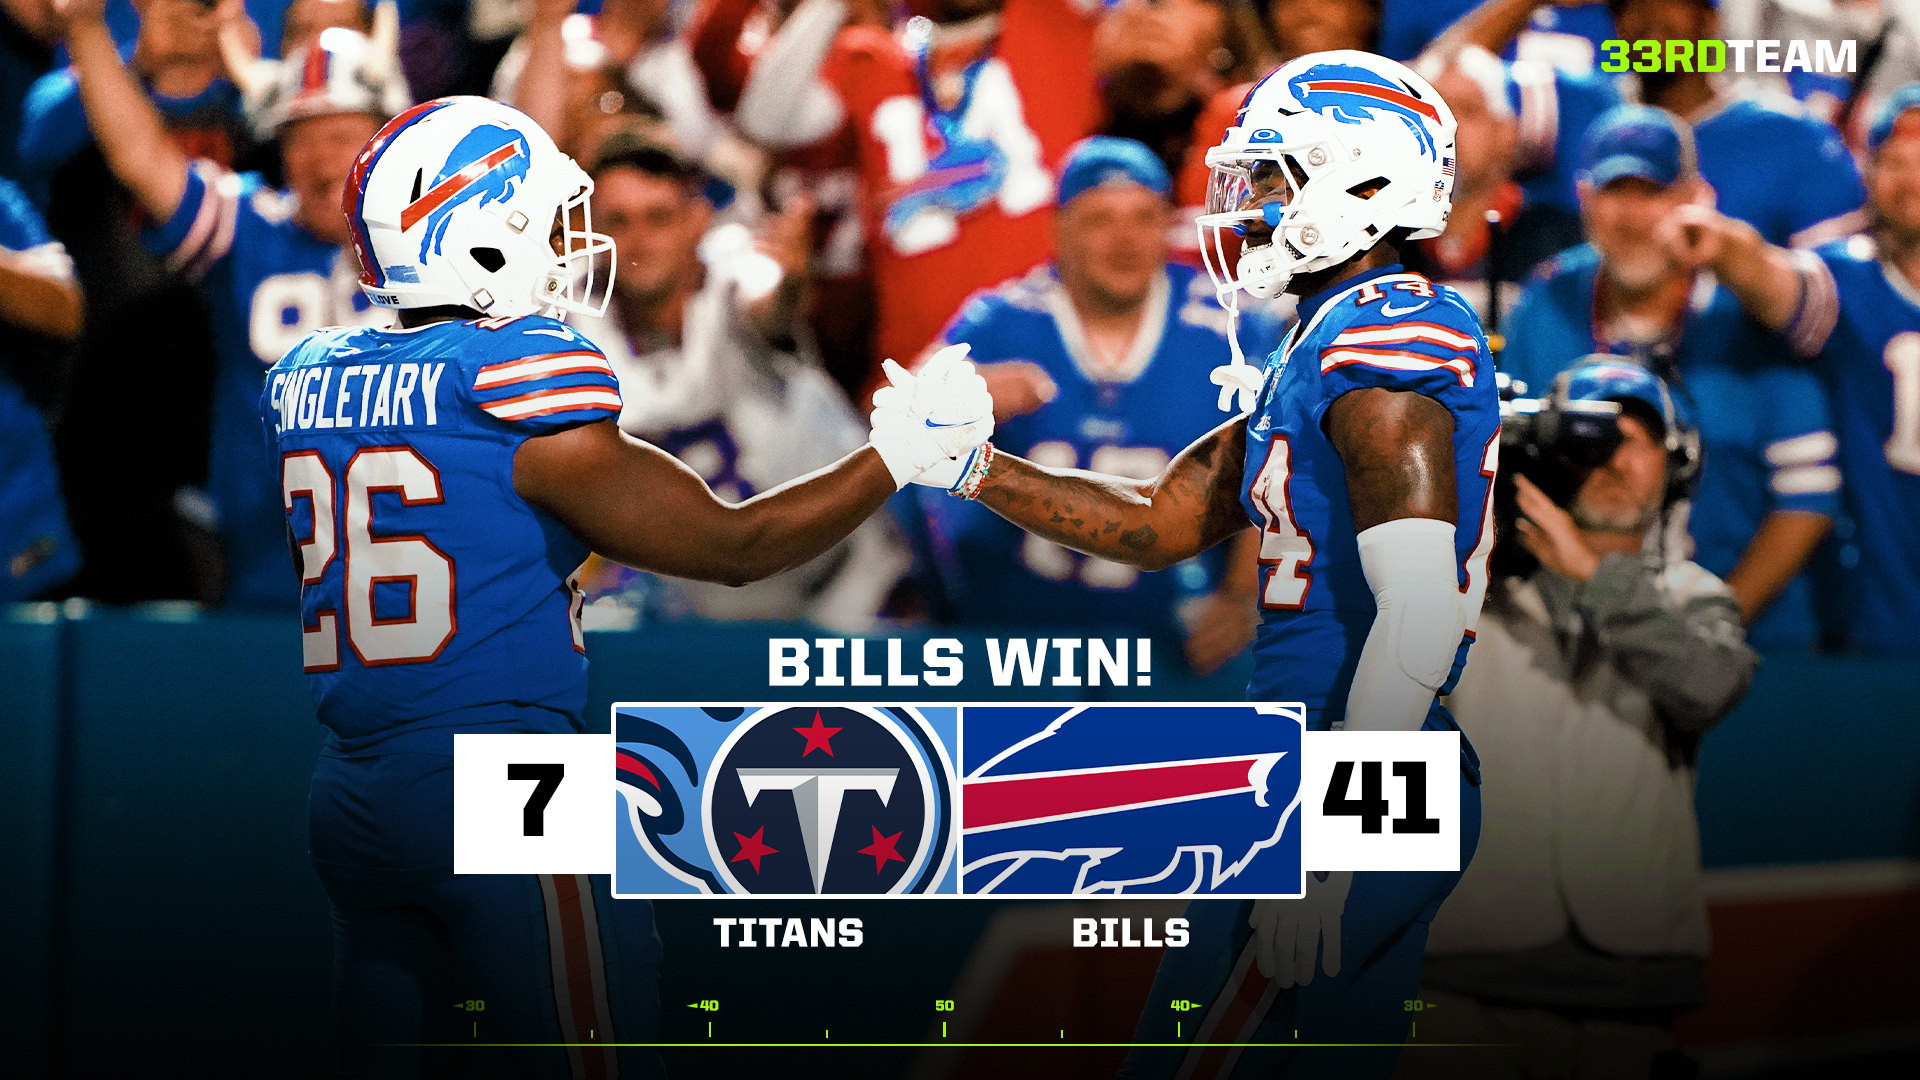 Buffalo Bills 41, Tennessee Titans 7: Final score, recap, highlights